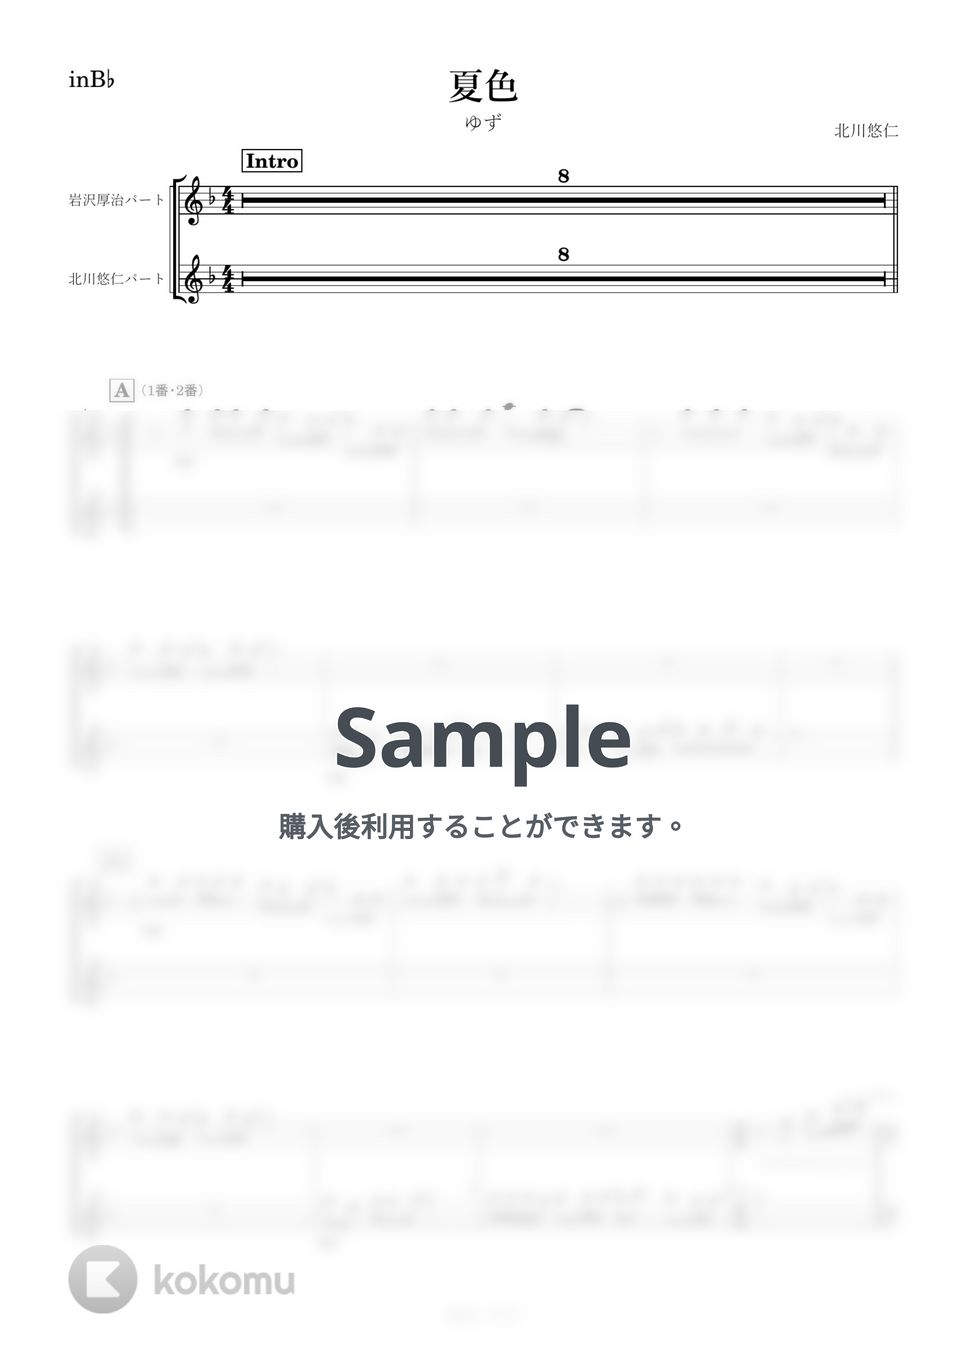 ゆず - 夏色 (B♭) by kanamusic